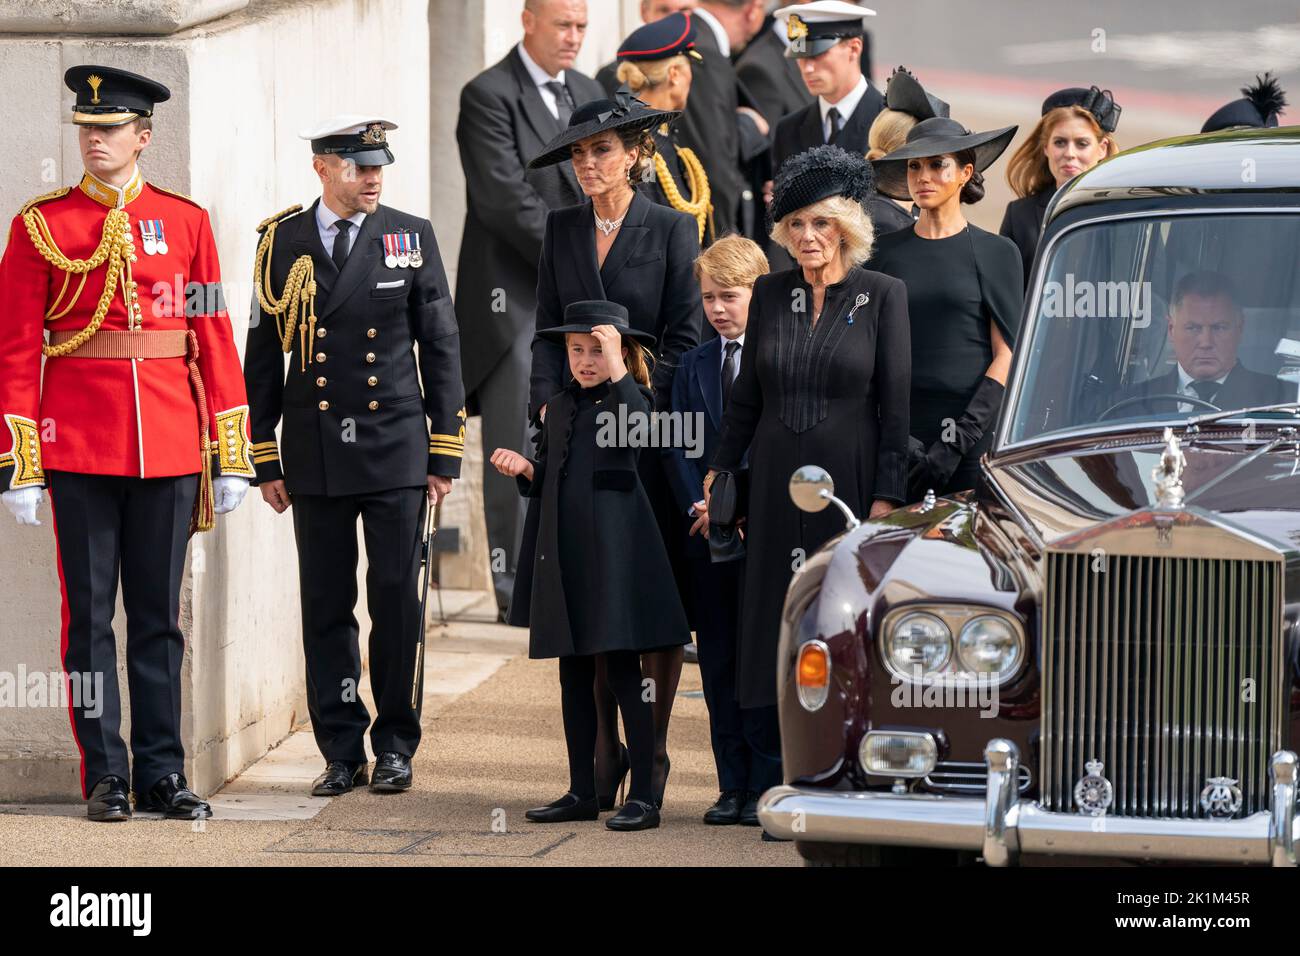 La princesa Charlotte, la princesa de Gales, el príncipe George, la reina Consort y la duquesa de Sussex como carruaje de armas del Estado que lleva el ataúd de la reina Isabel II llega a Wellington Arch durante la procesión ceremonial que siguió a su funeral del Estado en la Abadía de Westminster, Londres. Foto de stock